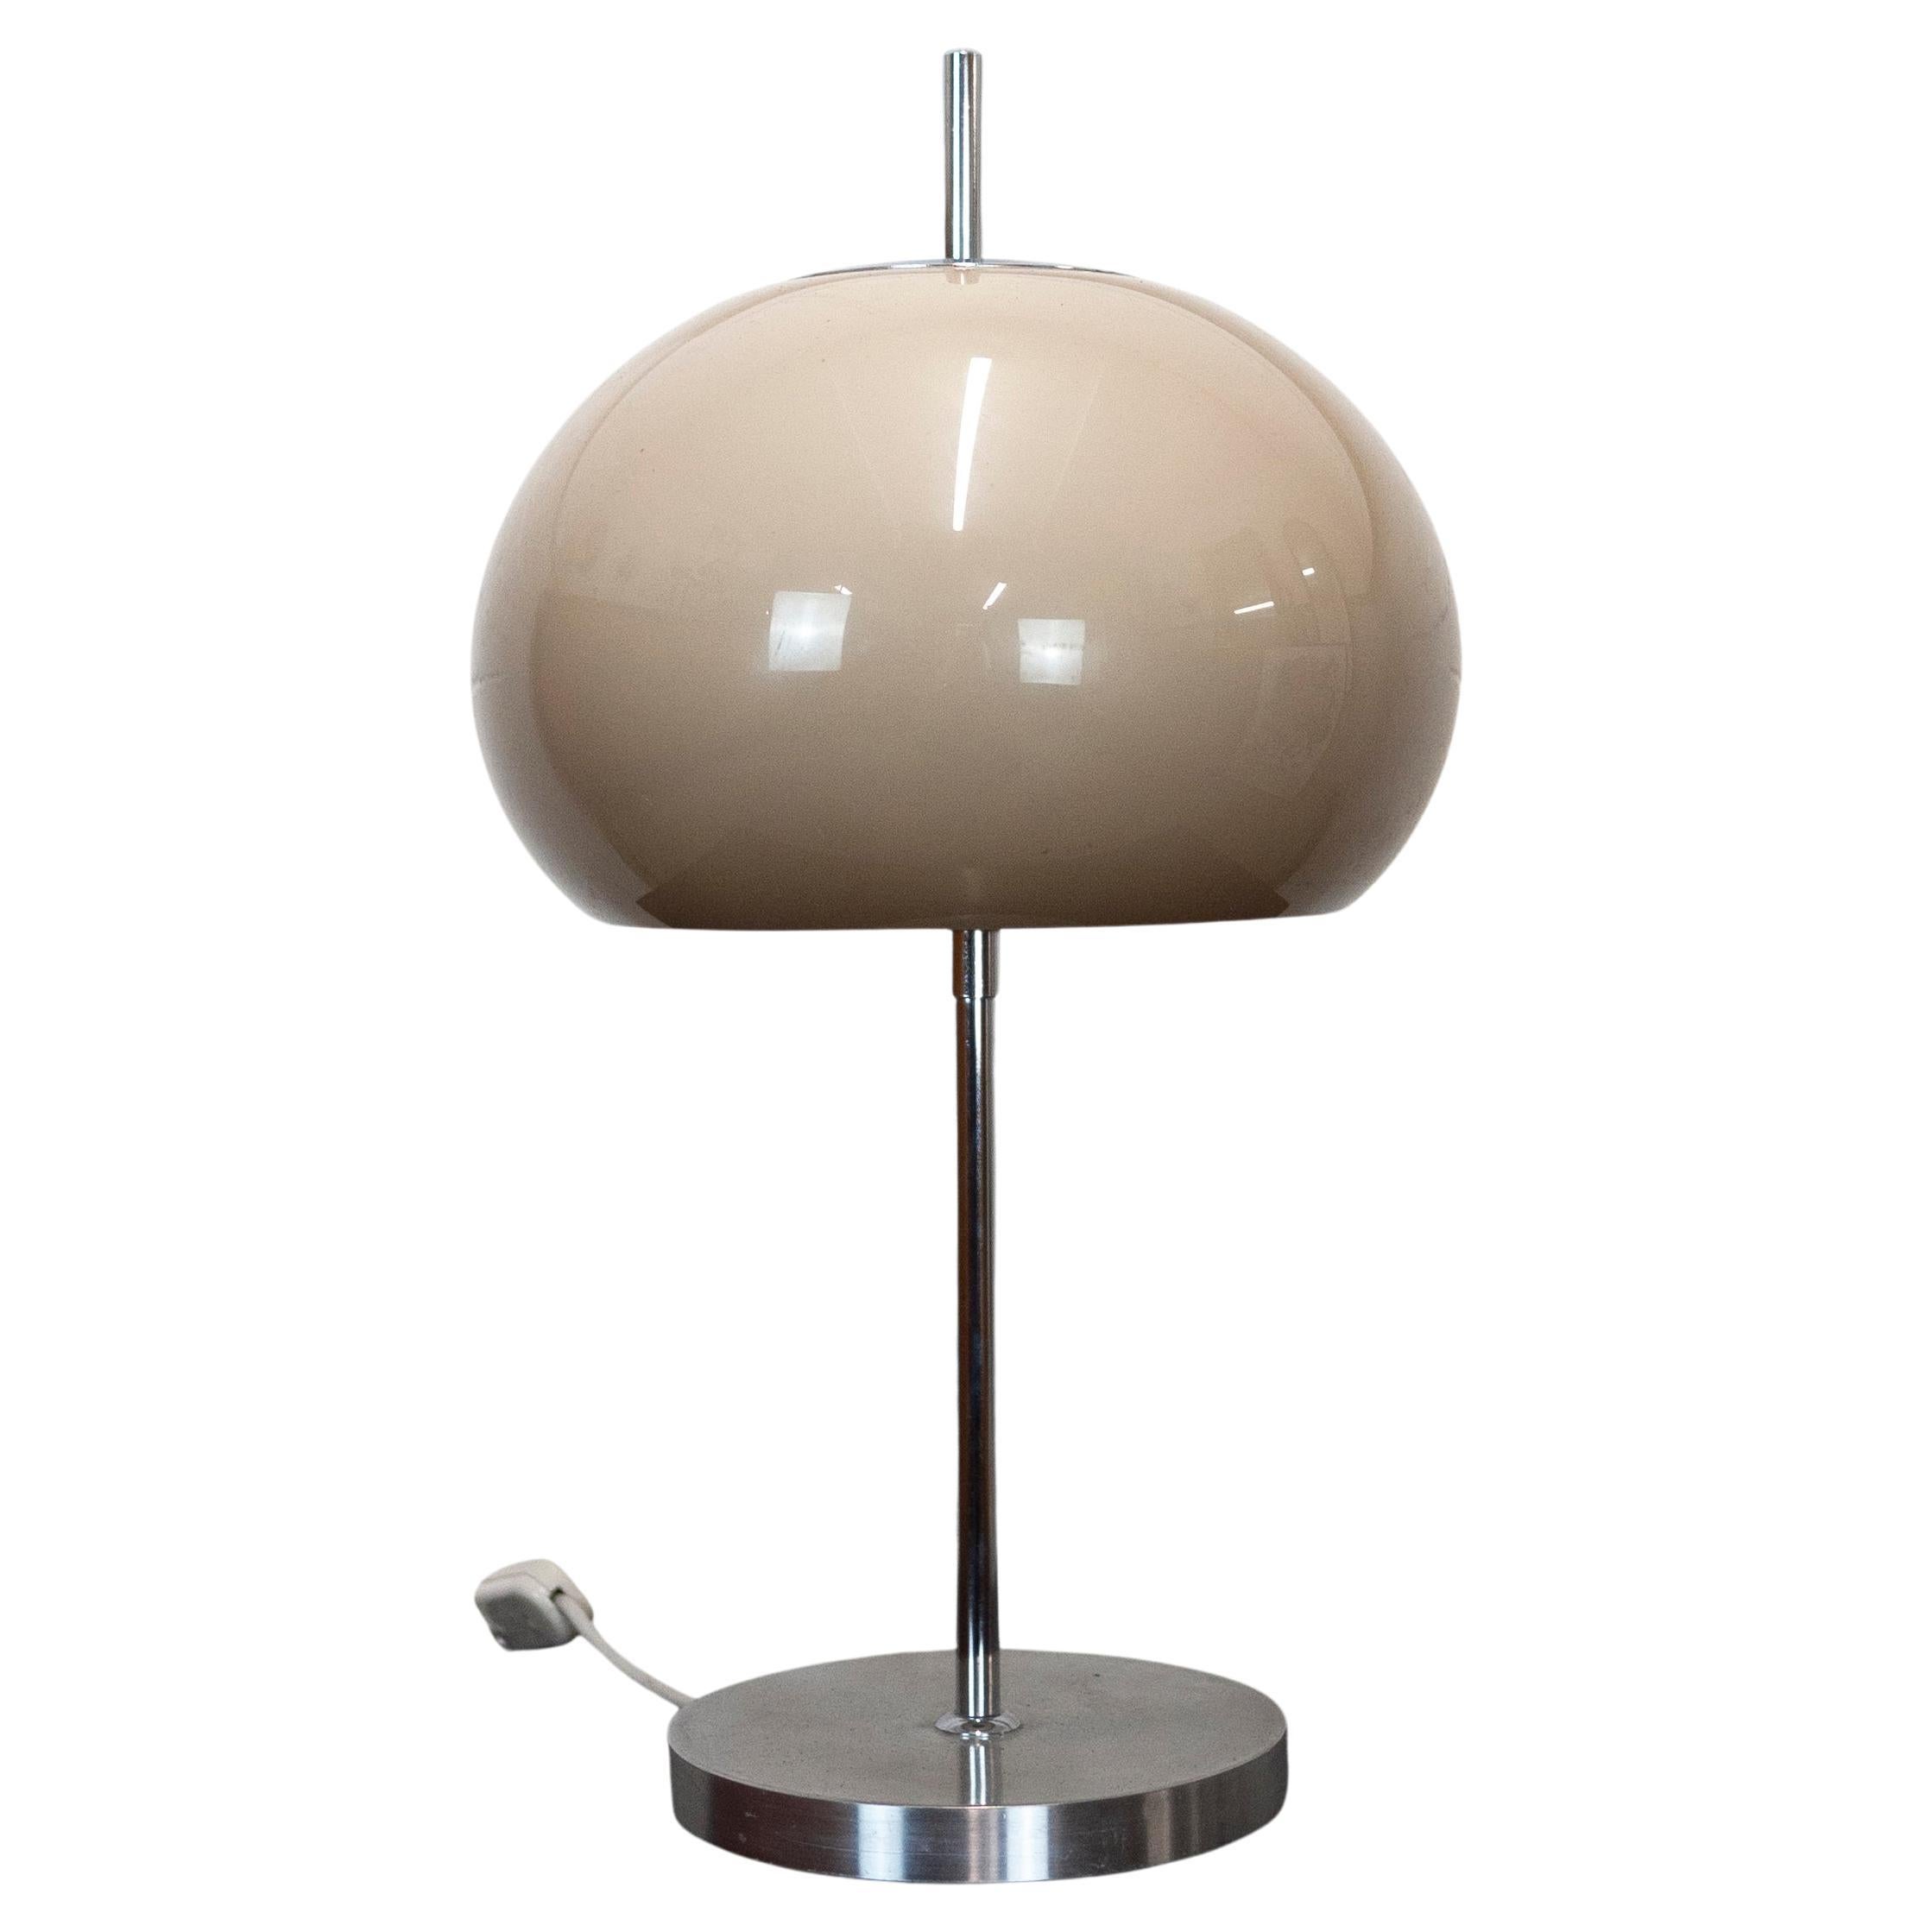 Vintage Italian Mushroom Shaped Desk Lamp by Prova, 1970s